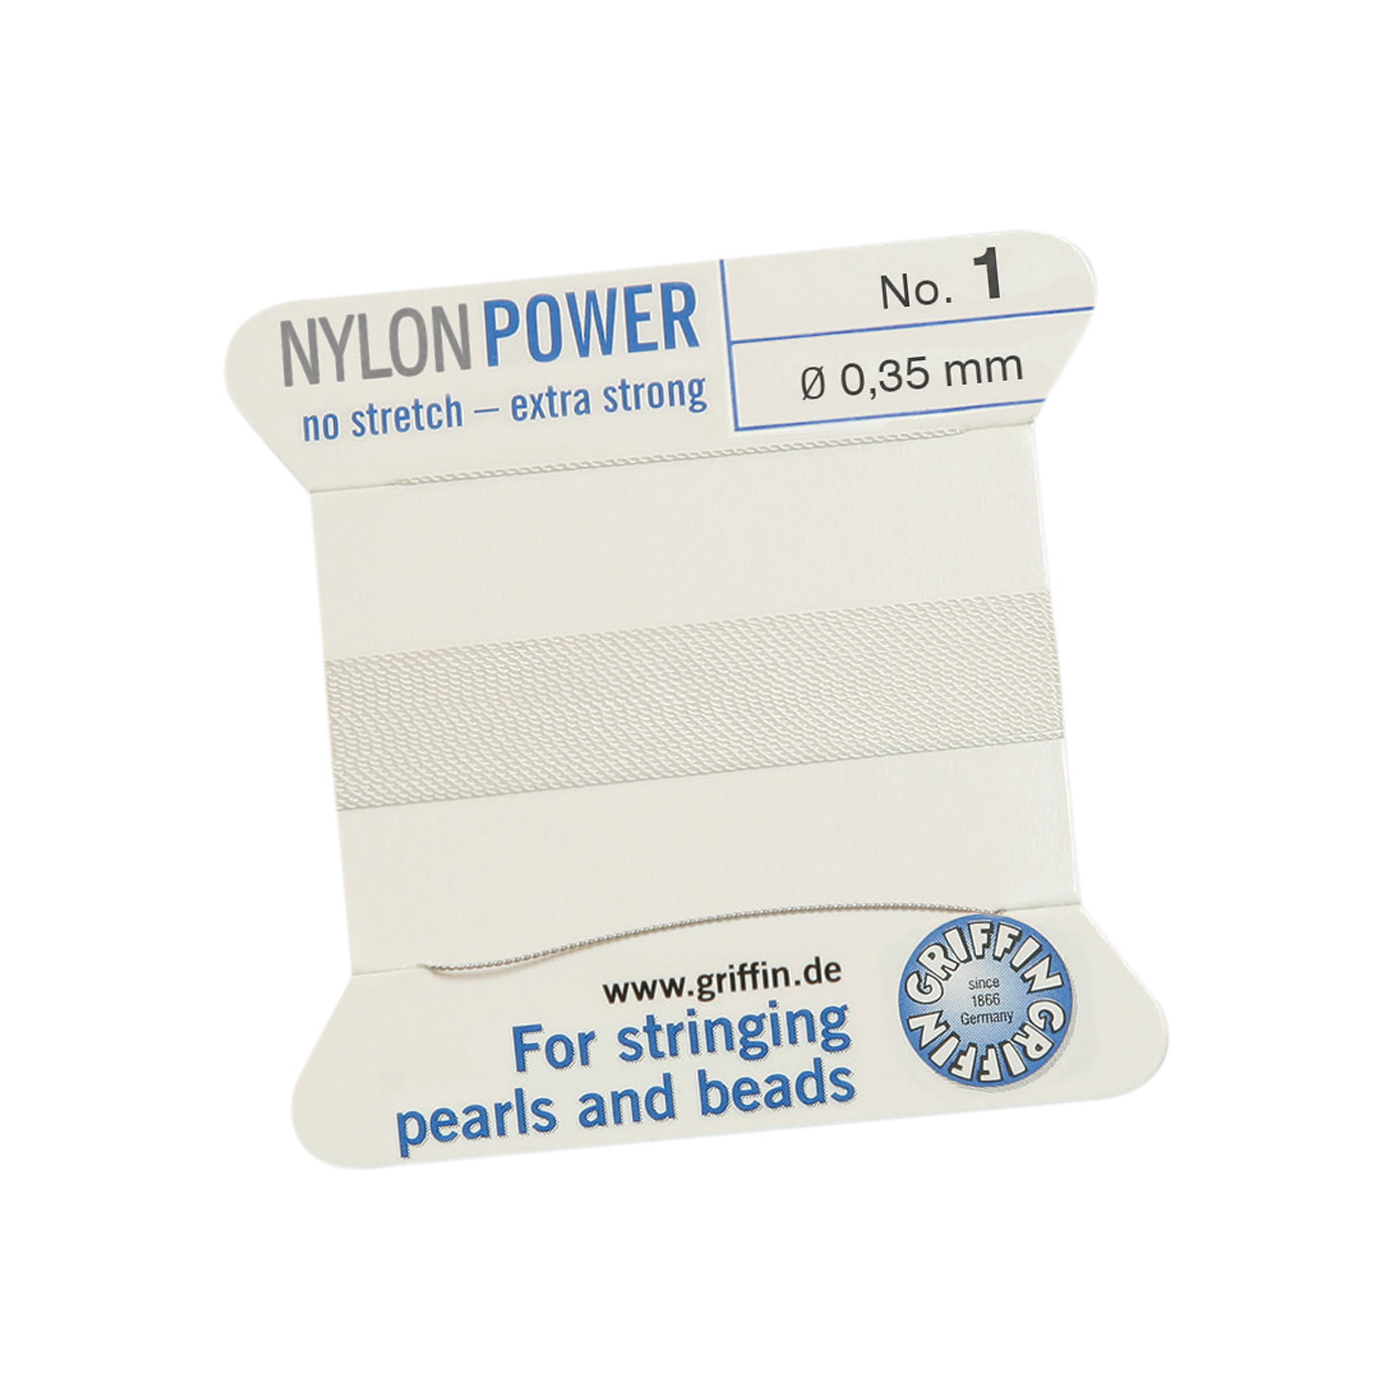 Bead Cord NylonPower, White, No. 1 - 2 m